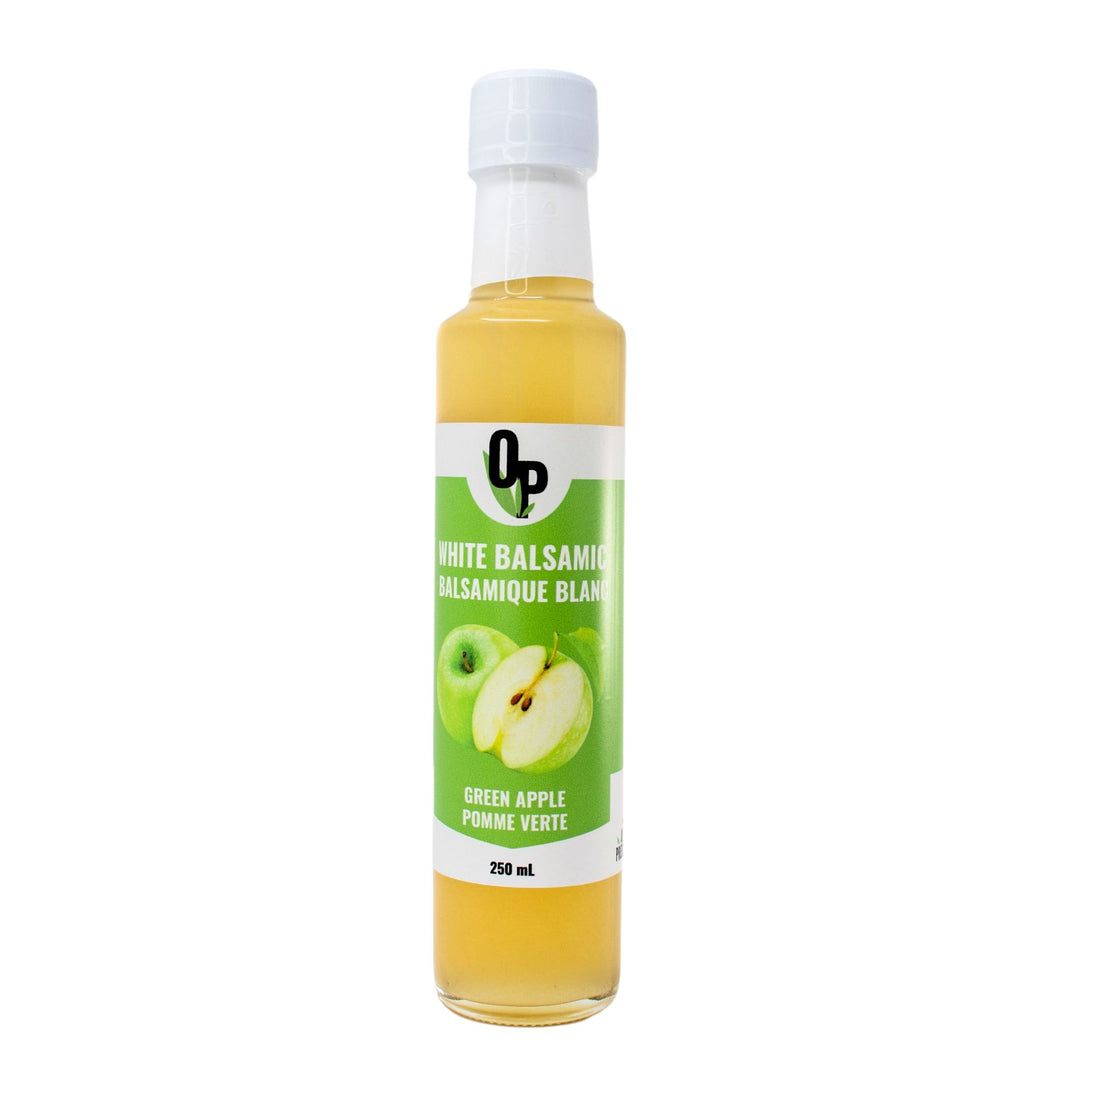 Green apple infused white balsamic vinegar 